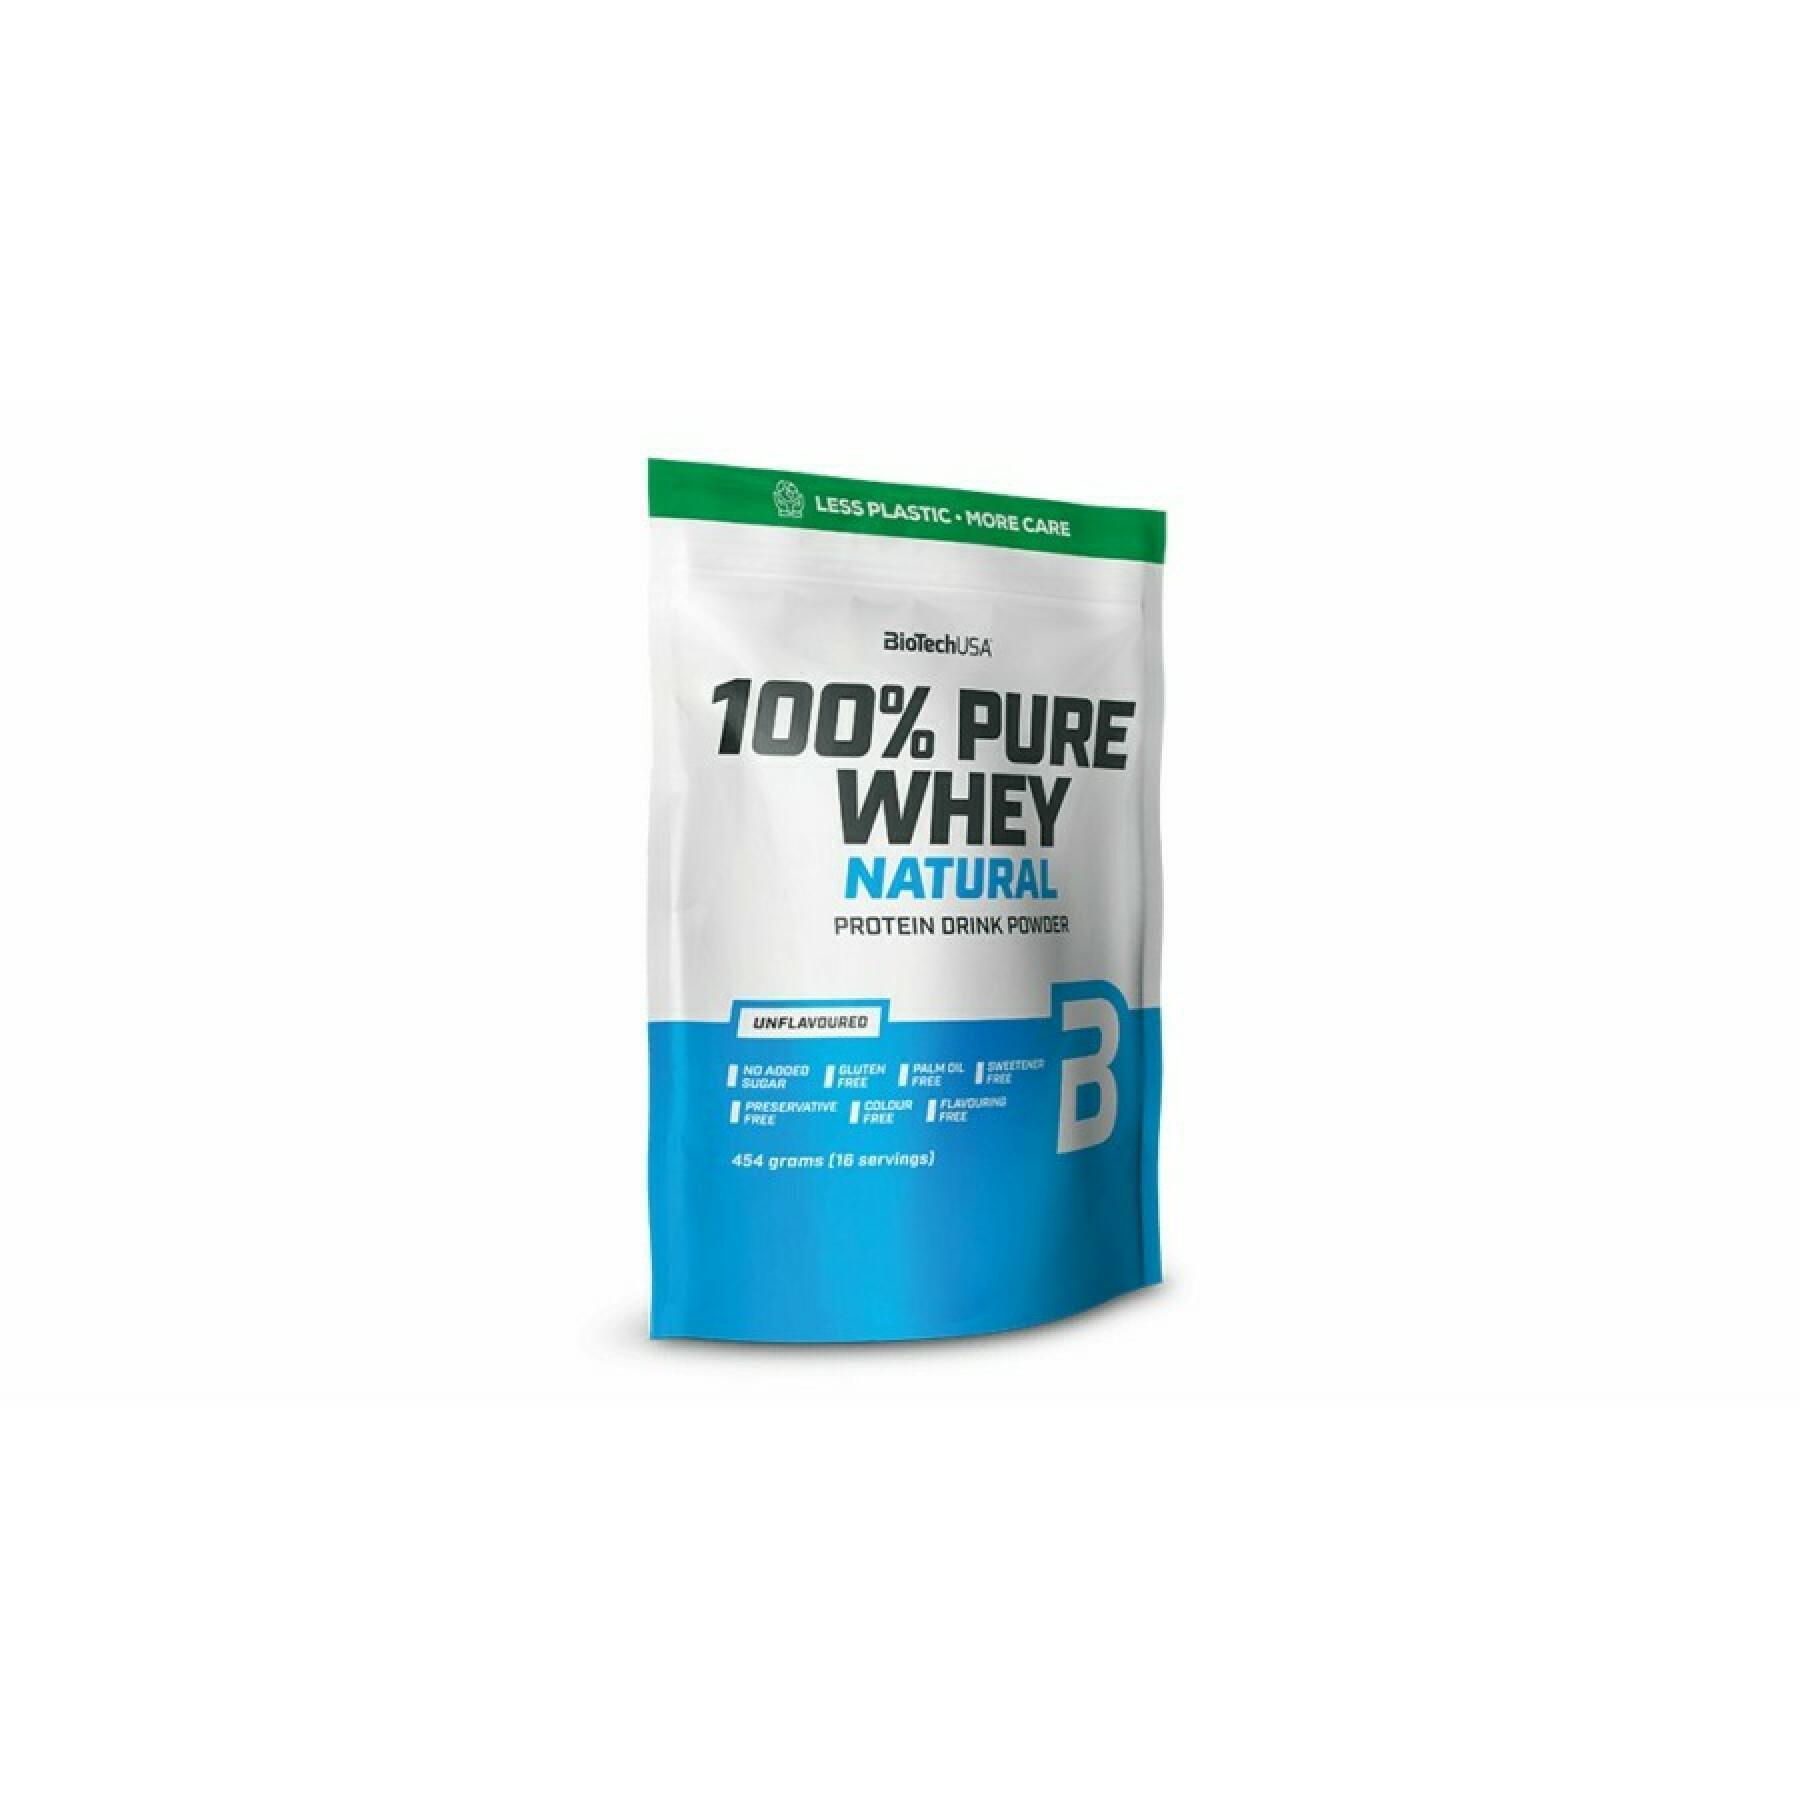 Paquete de 10 bolsas de proteína de suero 100% pura Biotech USA - Neutre - 454g